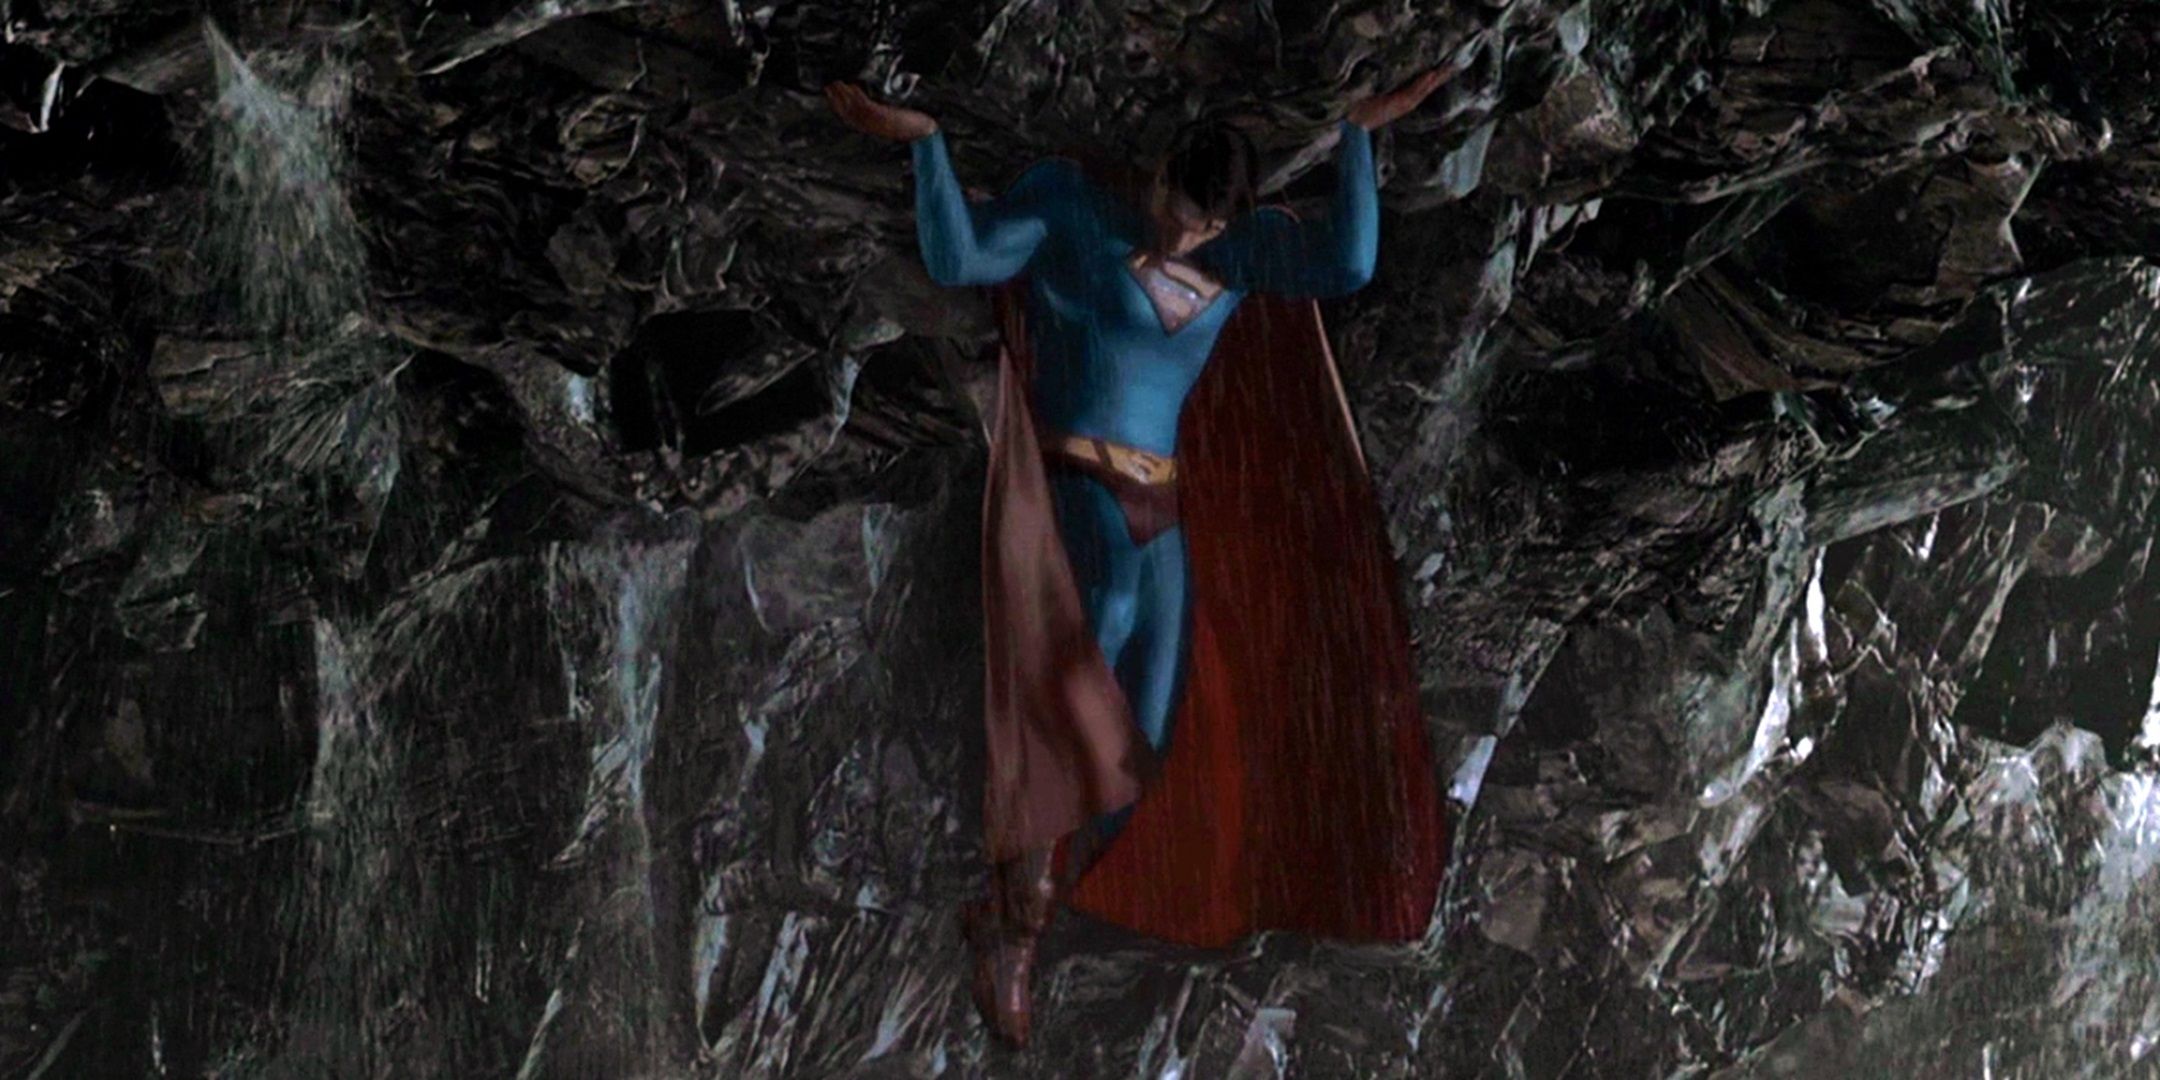 Сцена из «Криптонитового острова» в «Возвращении Супермена» имела аналог из комиксов